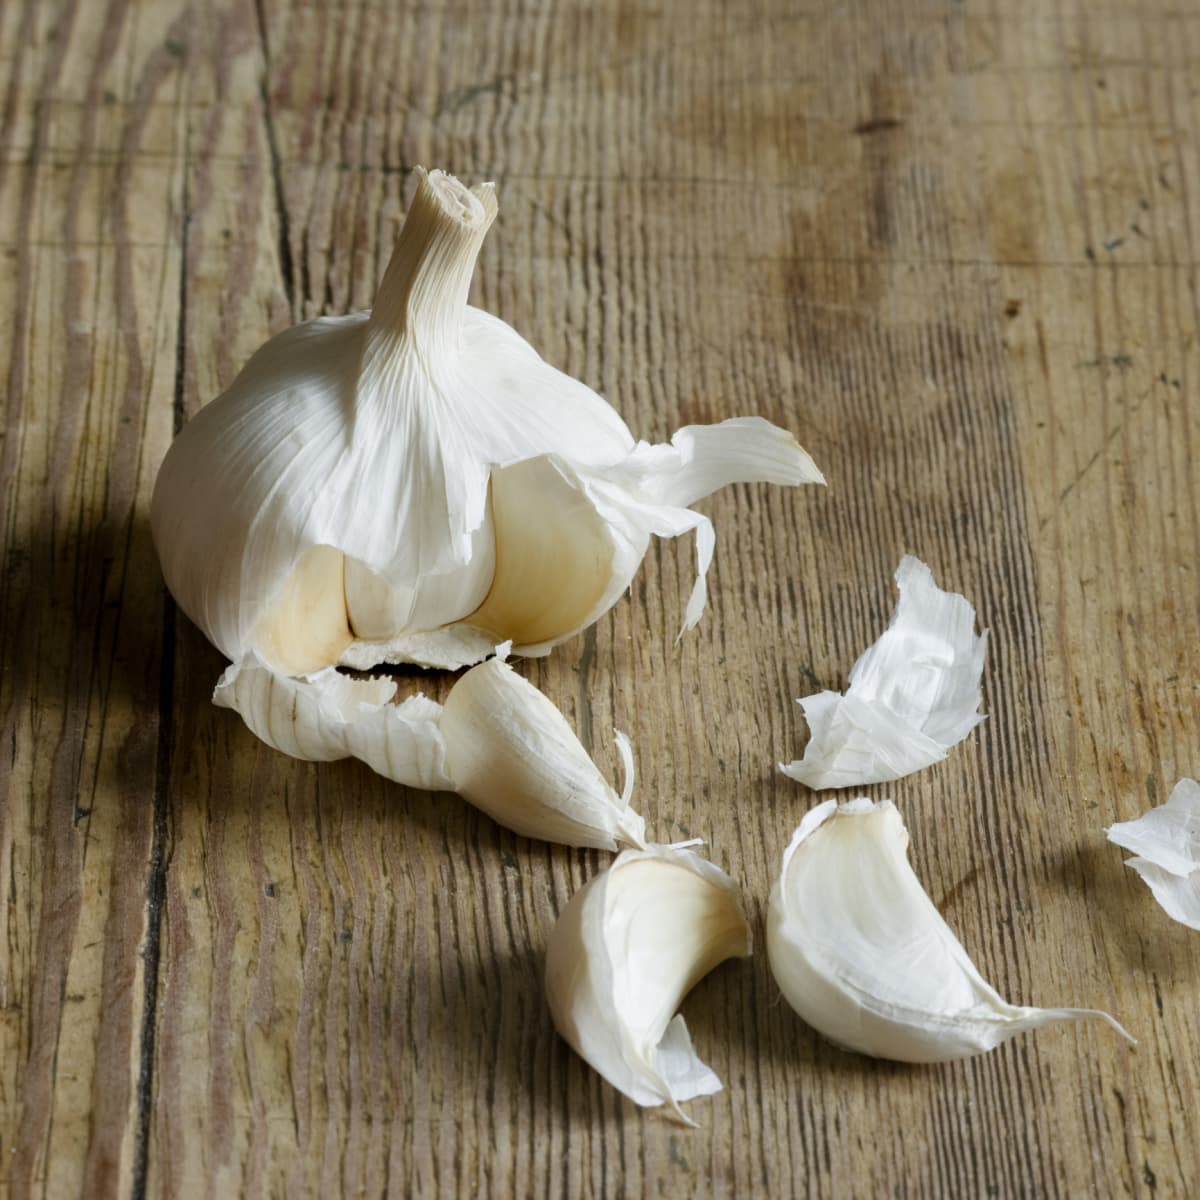 A bulb of garlic broken up